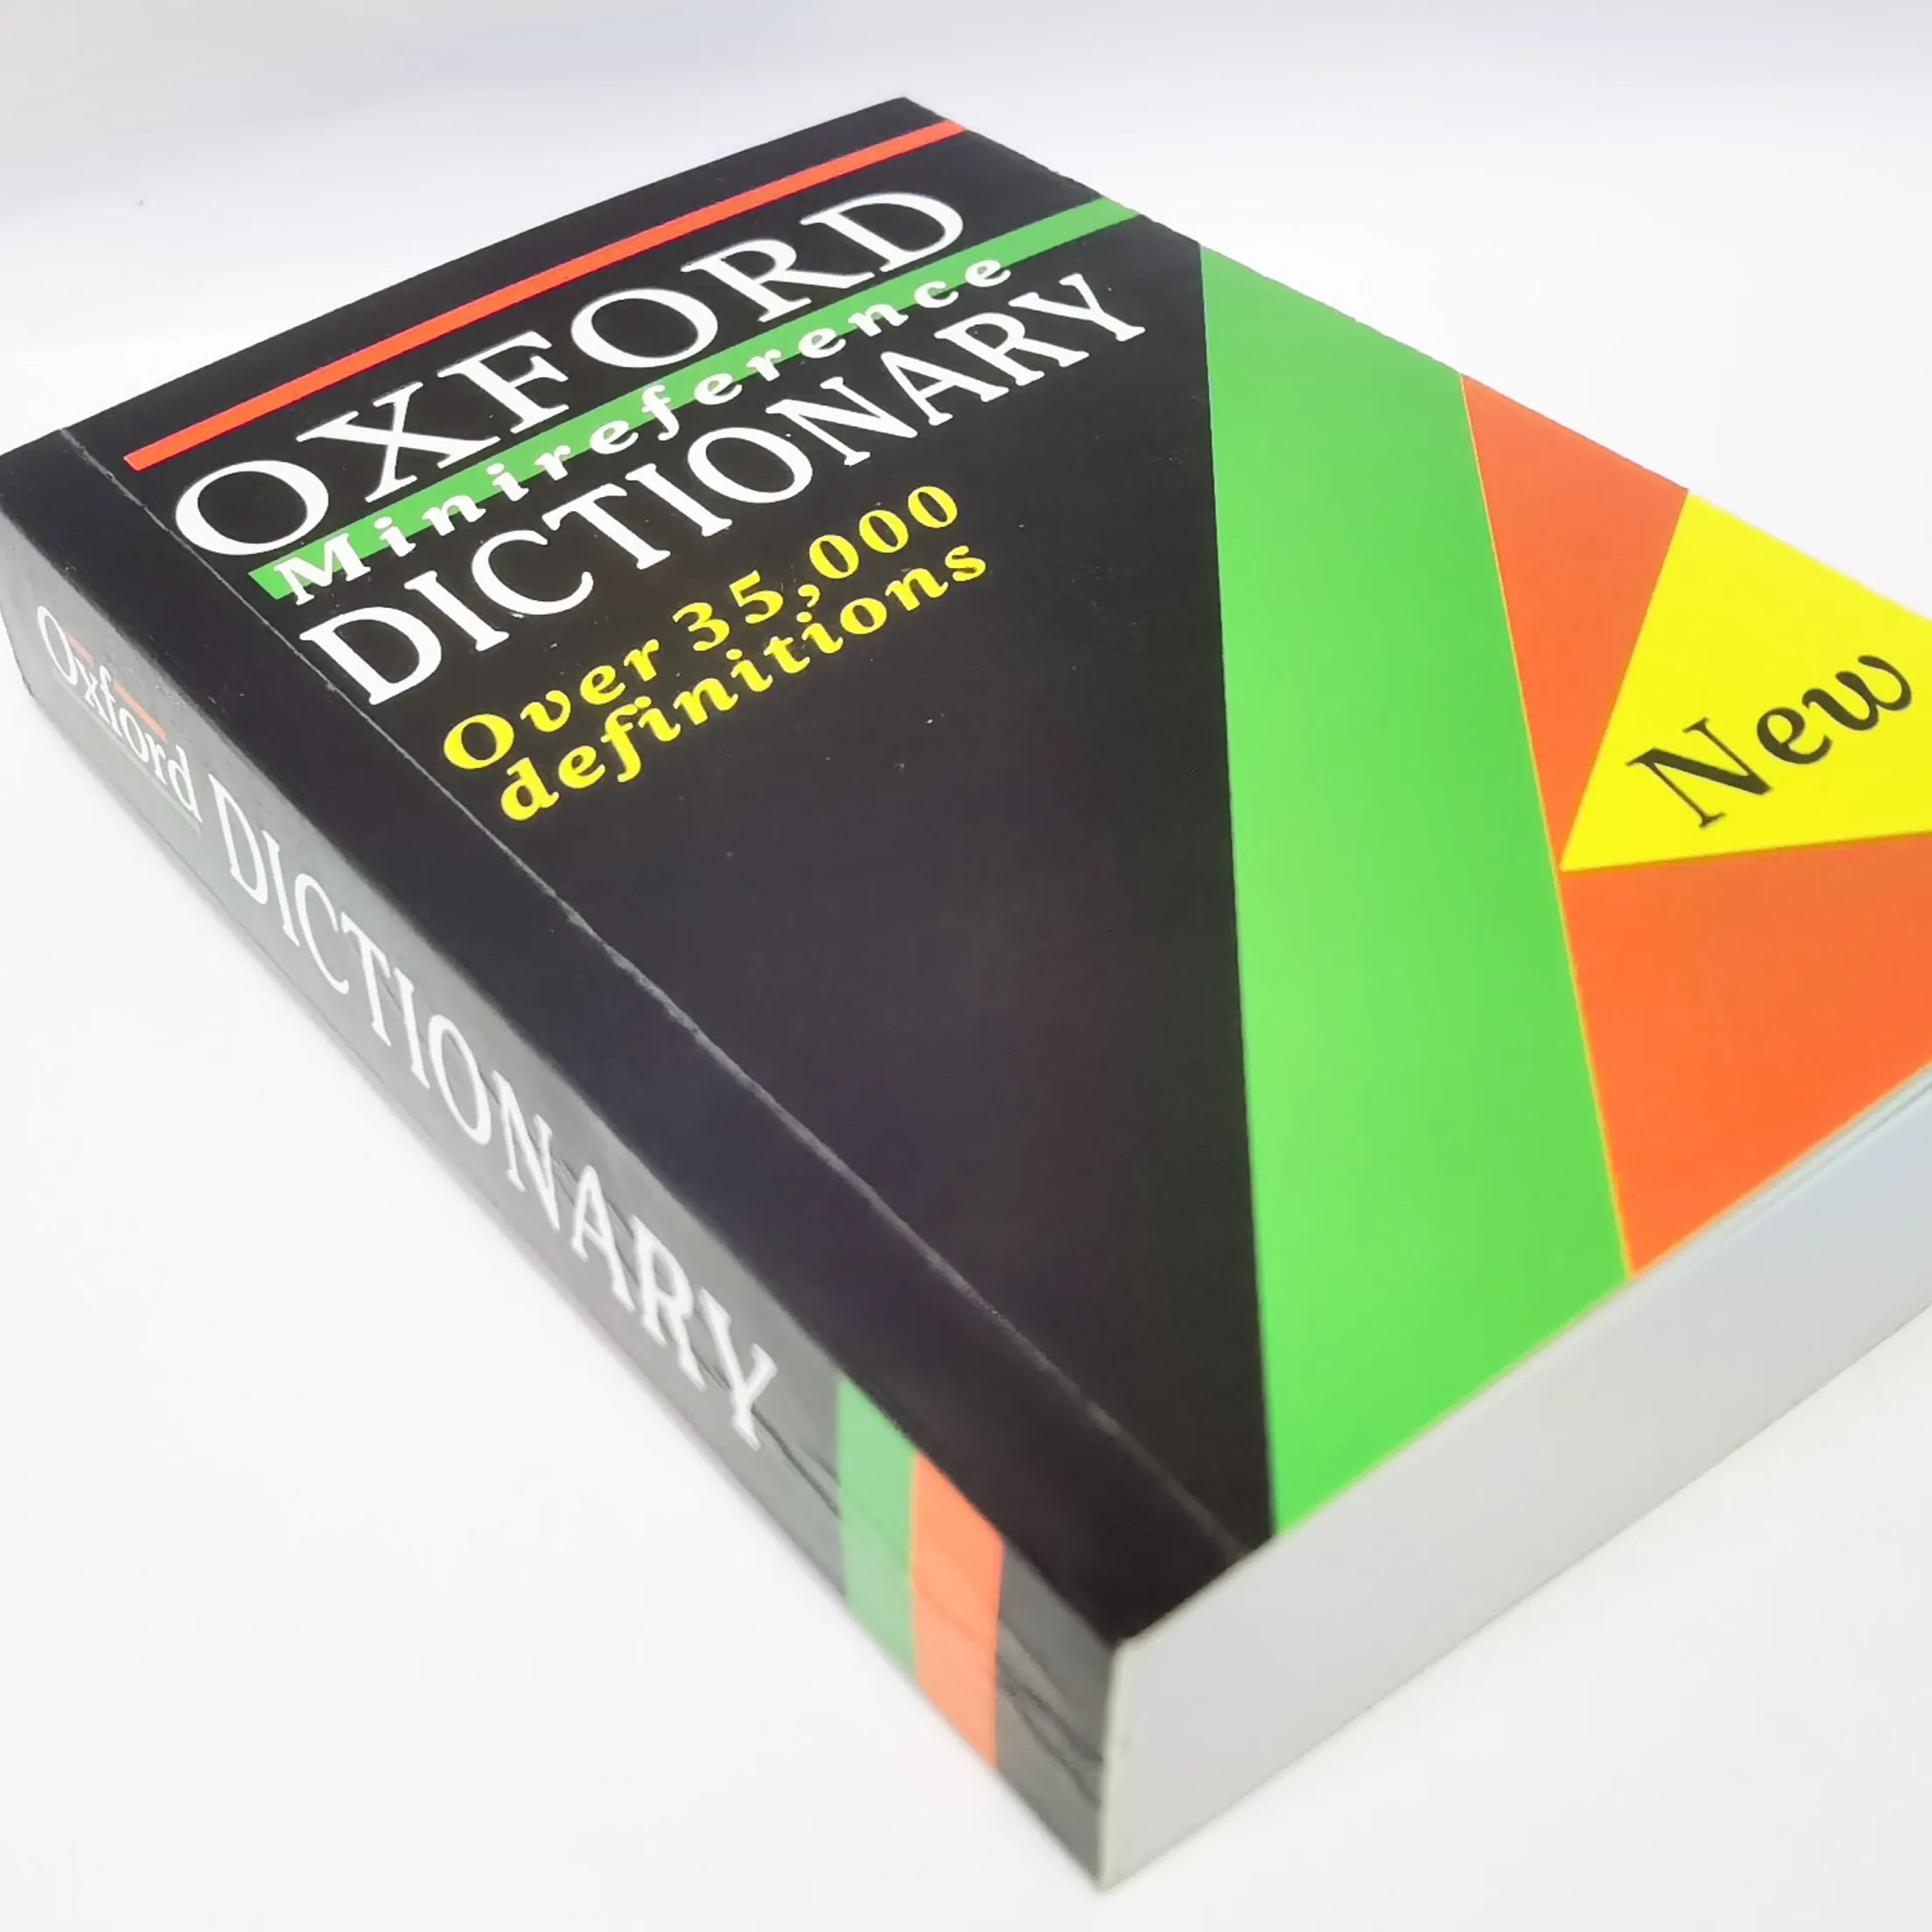 Venda por atacado alta qualidade oxford minireferência dicionário oxford edição compacta